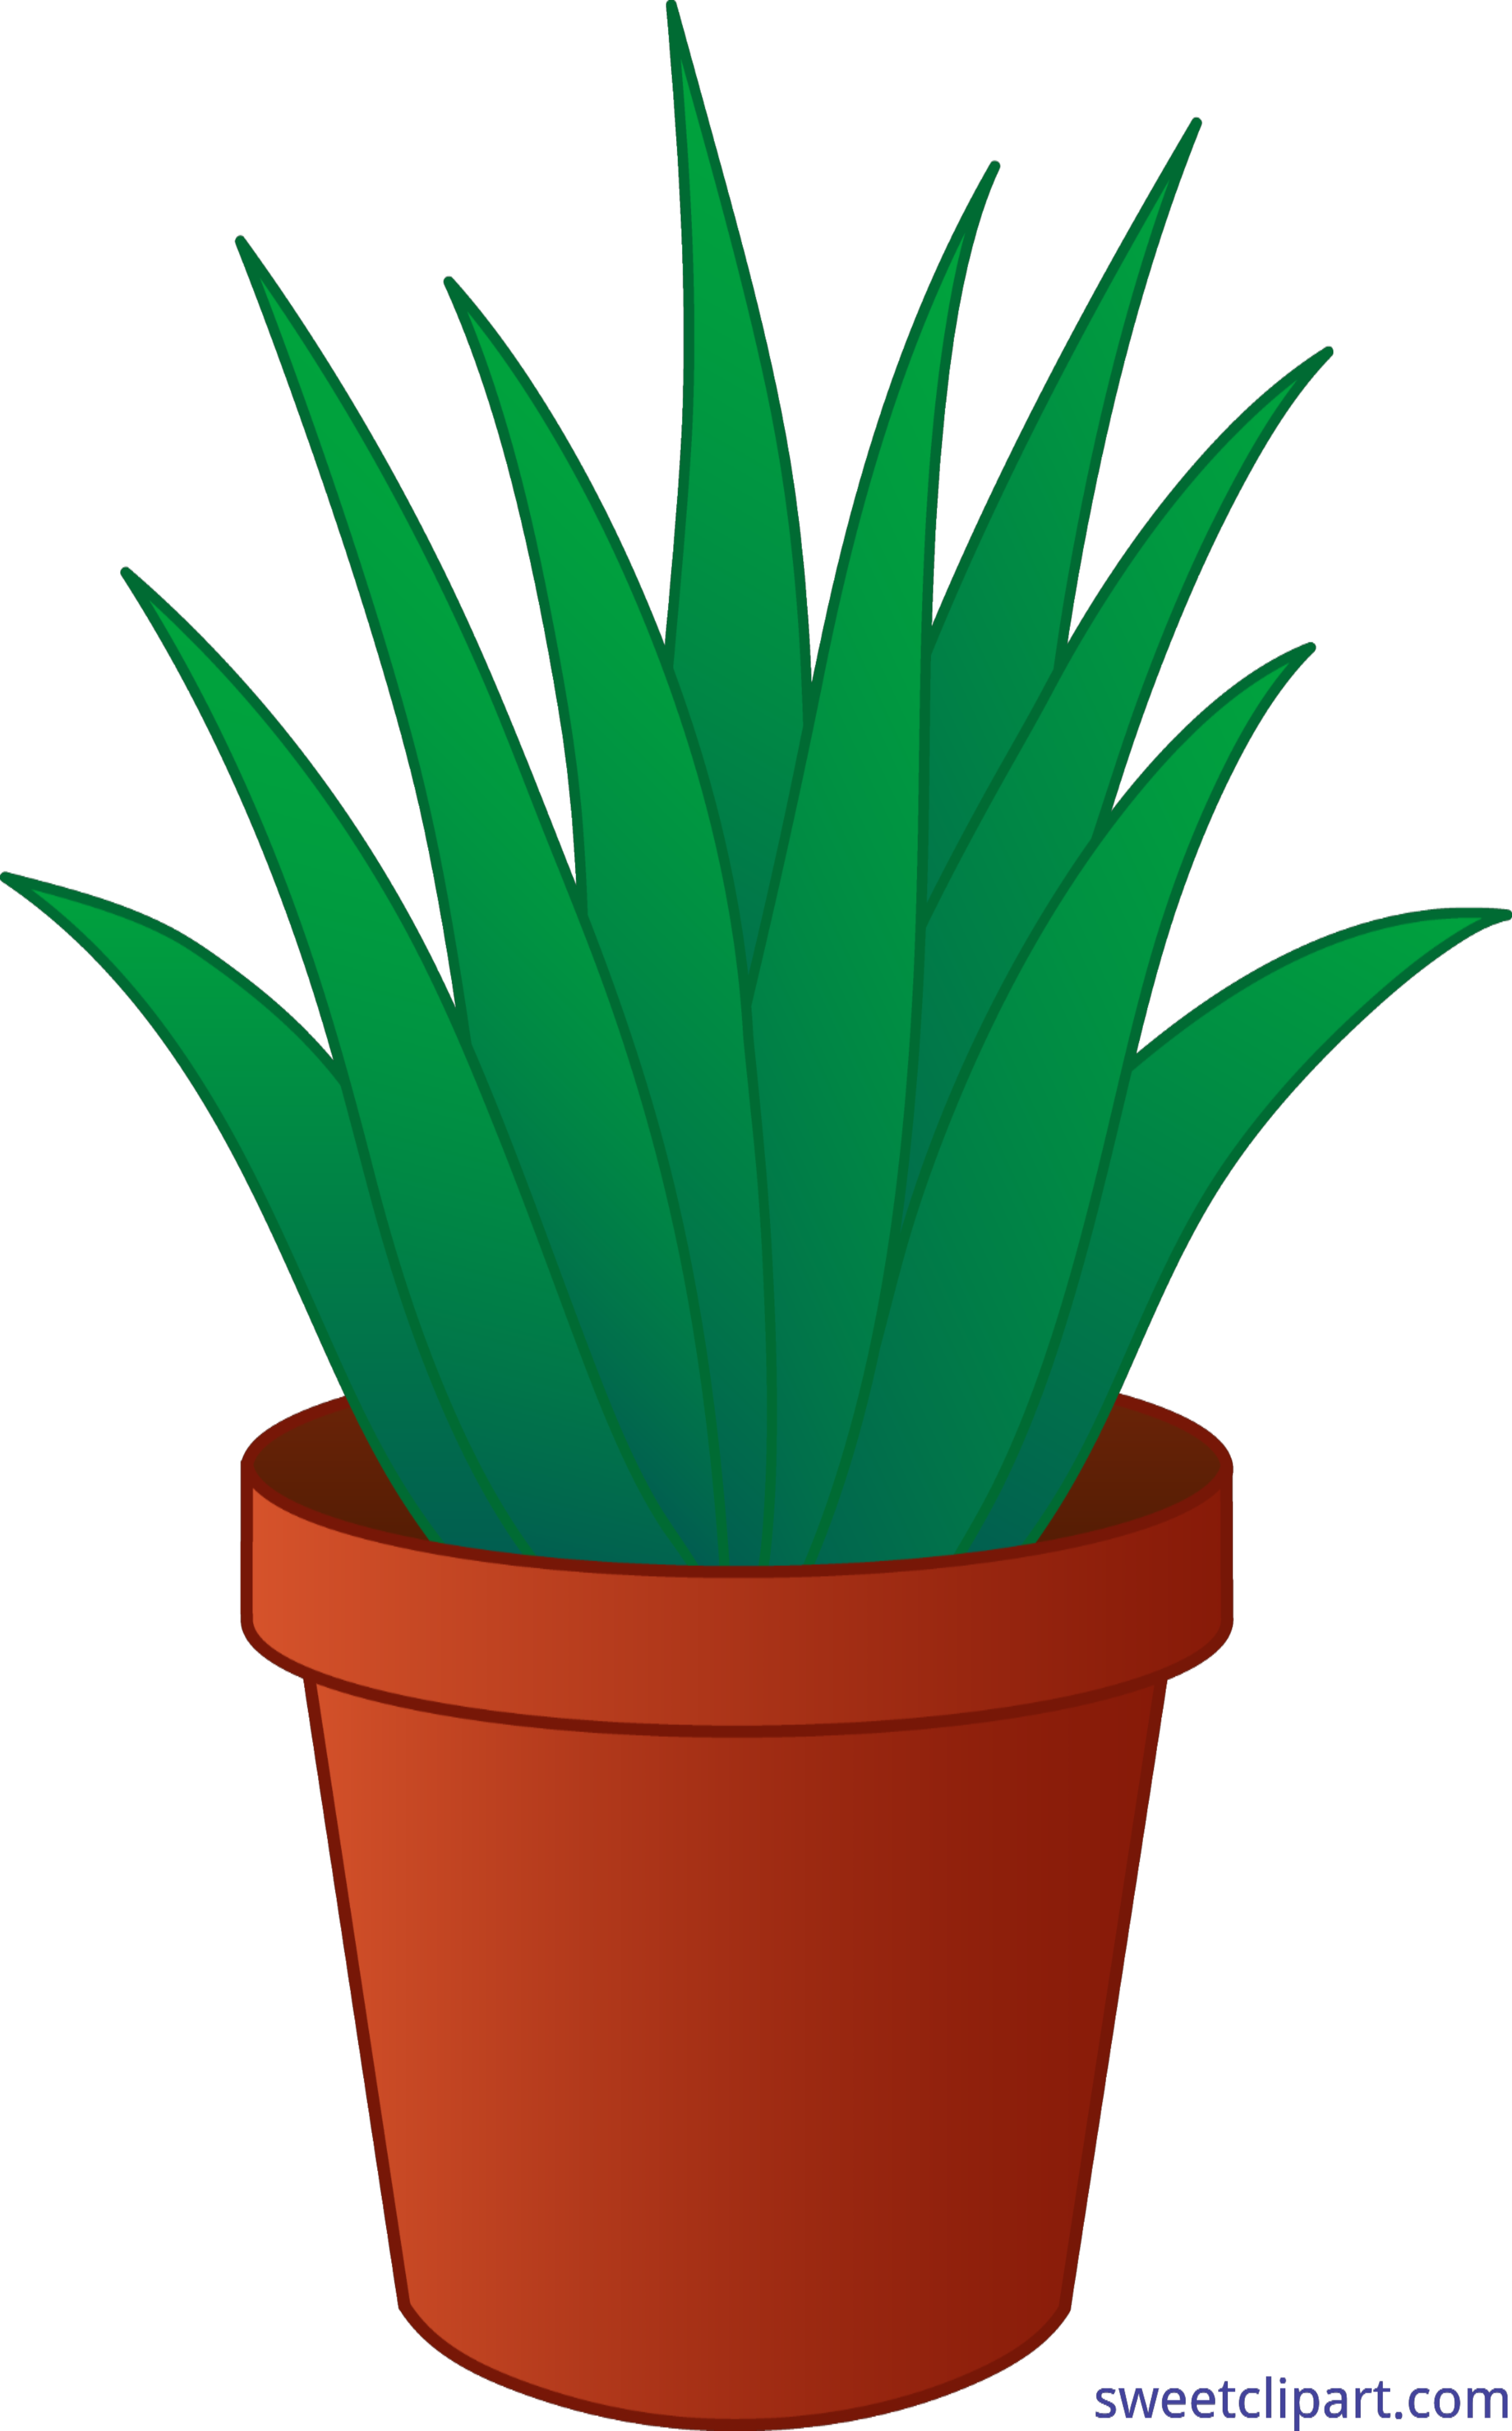 Aloe-vera. Element for design